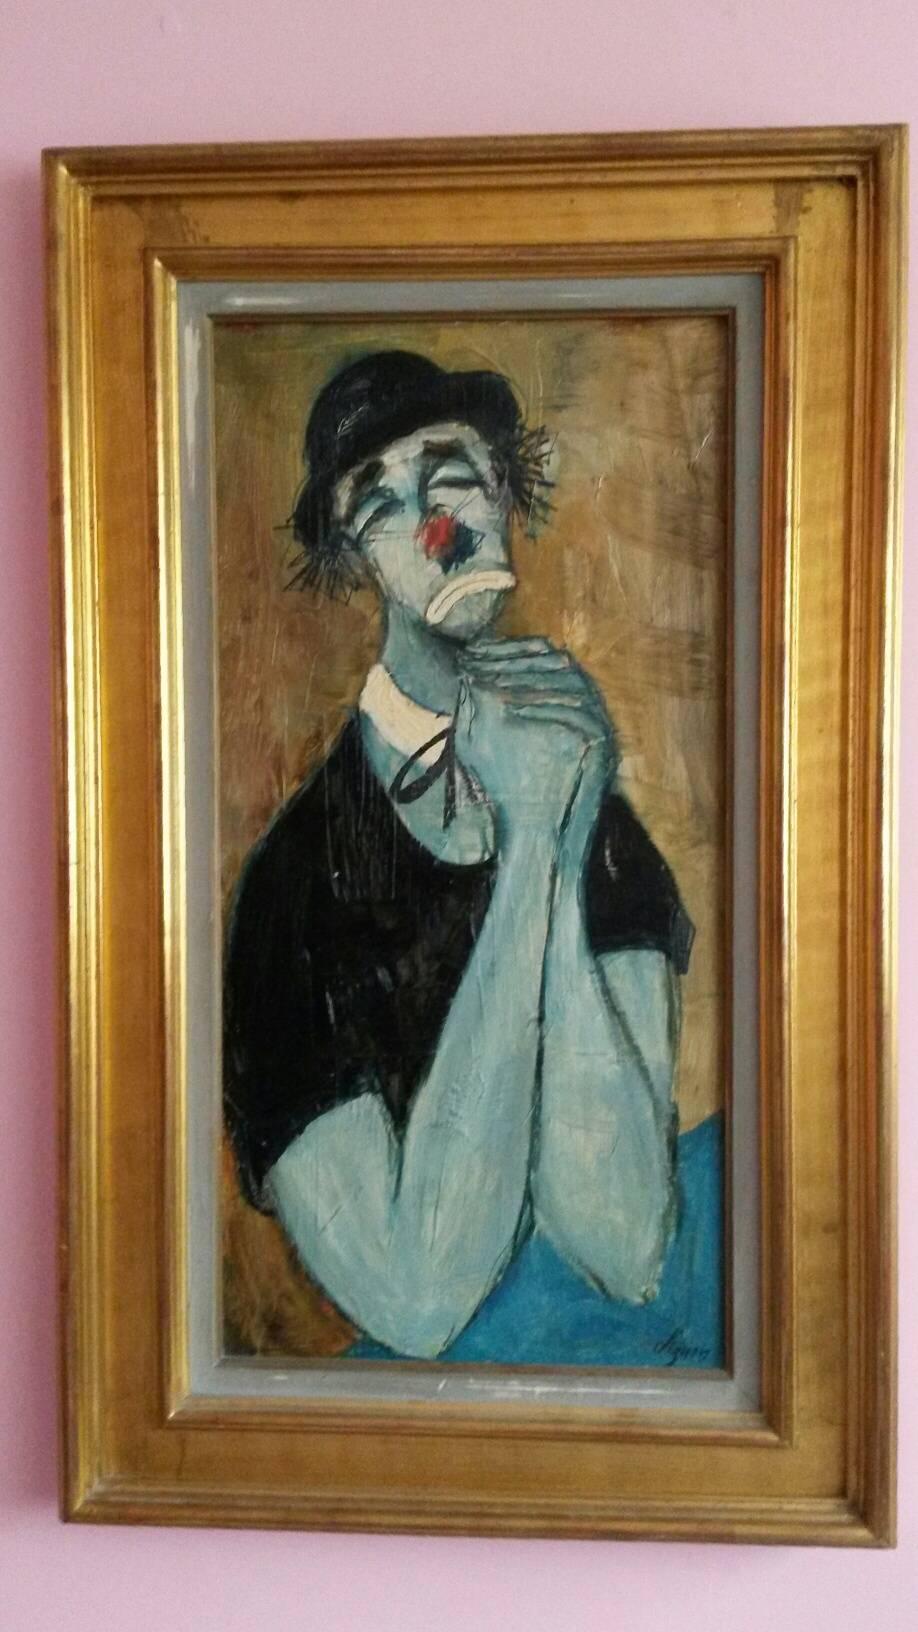 Schöne Darstellung eines Clowns:: der um Gnade bittet:: im expressionistischen Stil:: von Bernard LIGNON (geboren 1921) 

Das Gemälde ist in ausgezeichnetem Zustand:: in den 60er Jahren realisiert und wird von einem schönen vergoldeten Rahmen